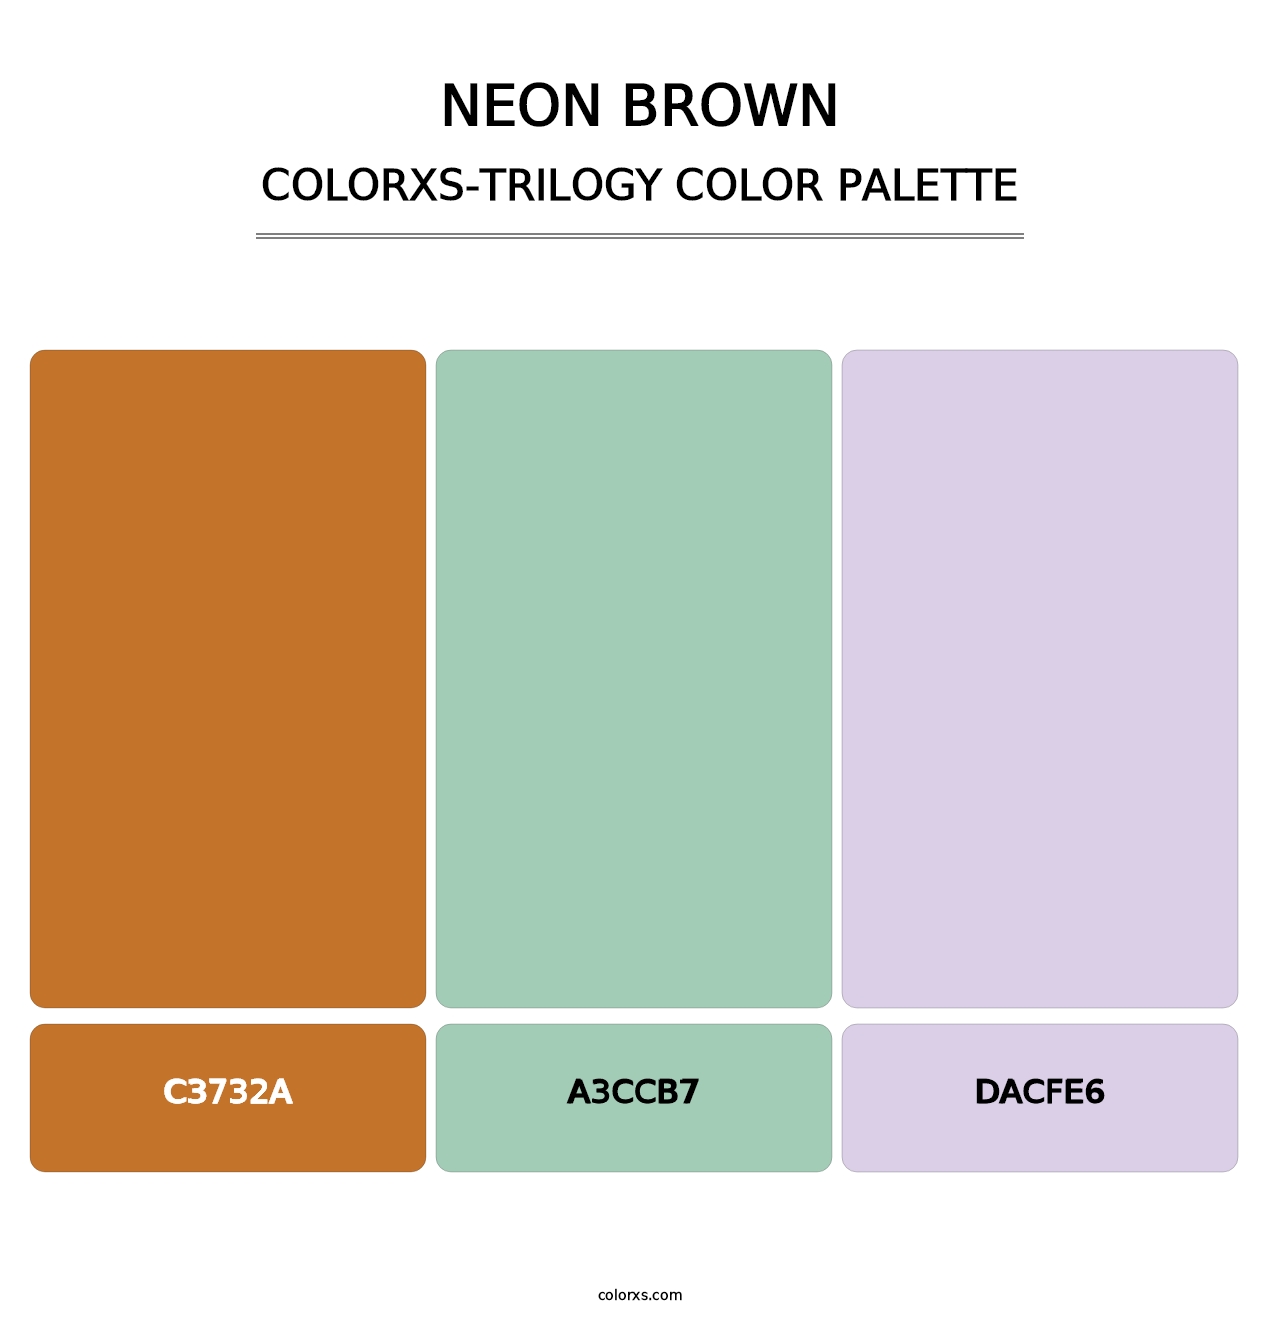 Neon Brown - Colorxs Trilogy Palette